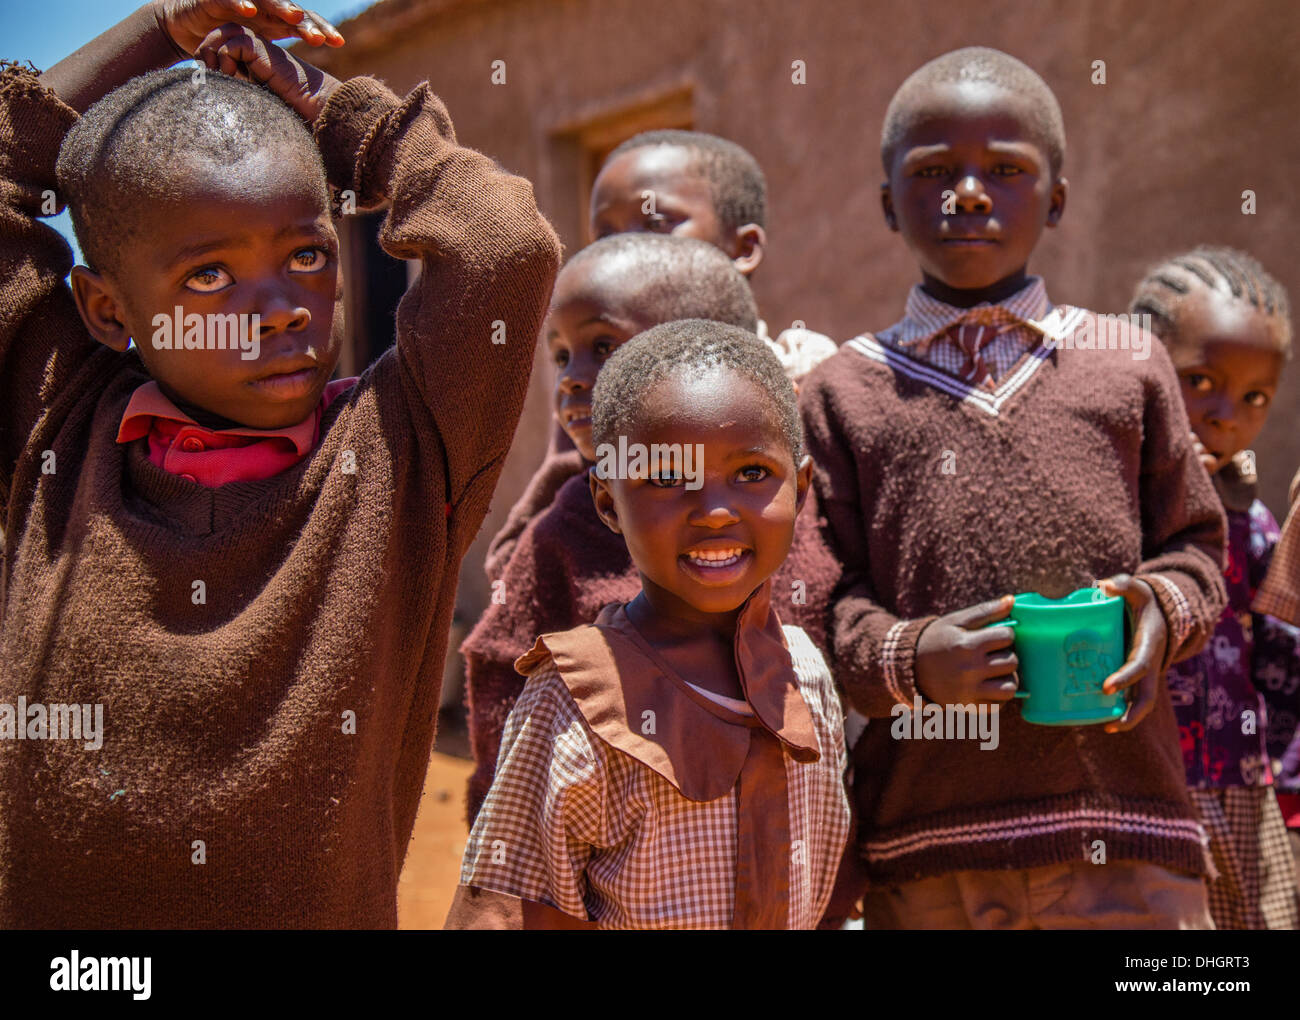 Les enfants de l'école primaire dans l'aire d'une école dans le sud du Kenya Sagalla Banque D'Images